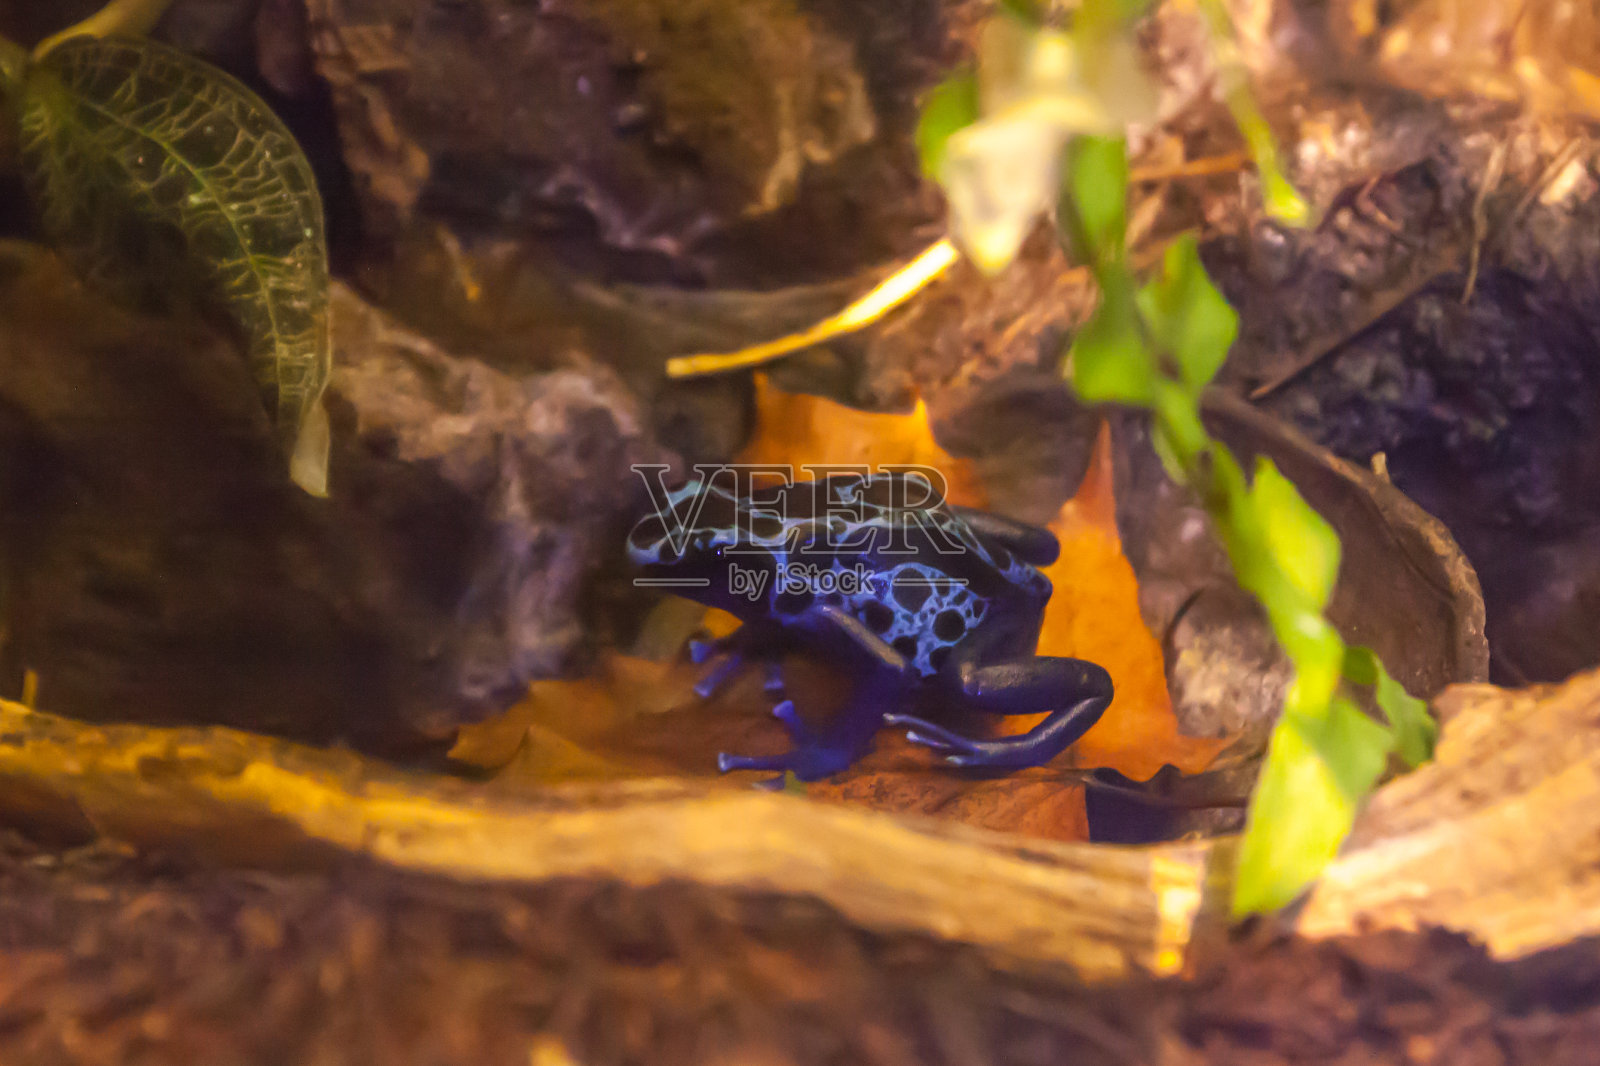 蓝色箭毒蛙-玻璃饲养箱中的黄绿石斛照片摄影图片